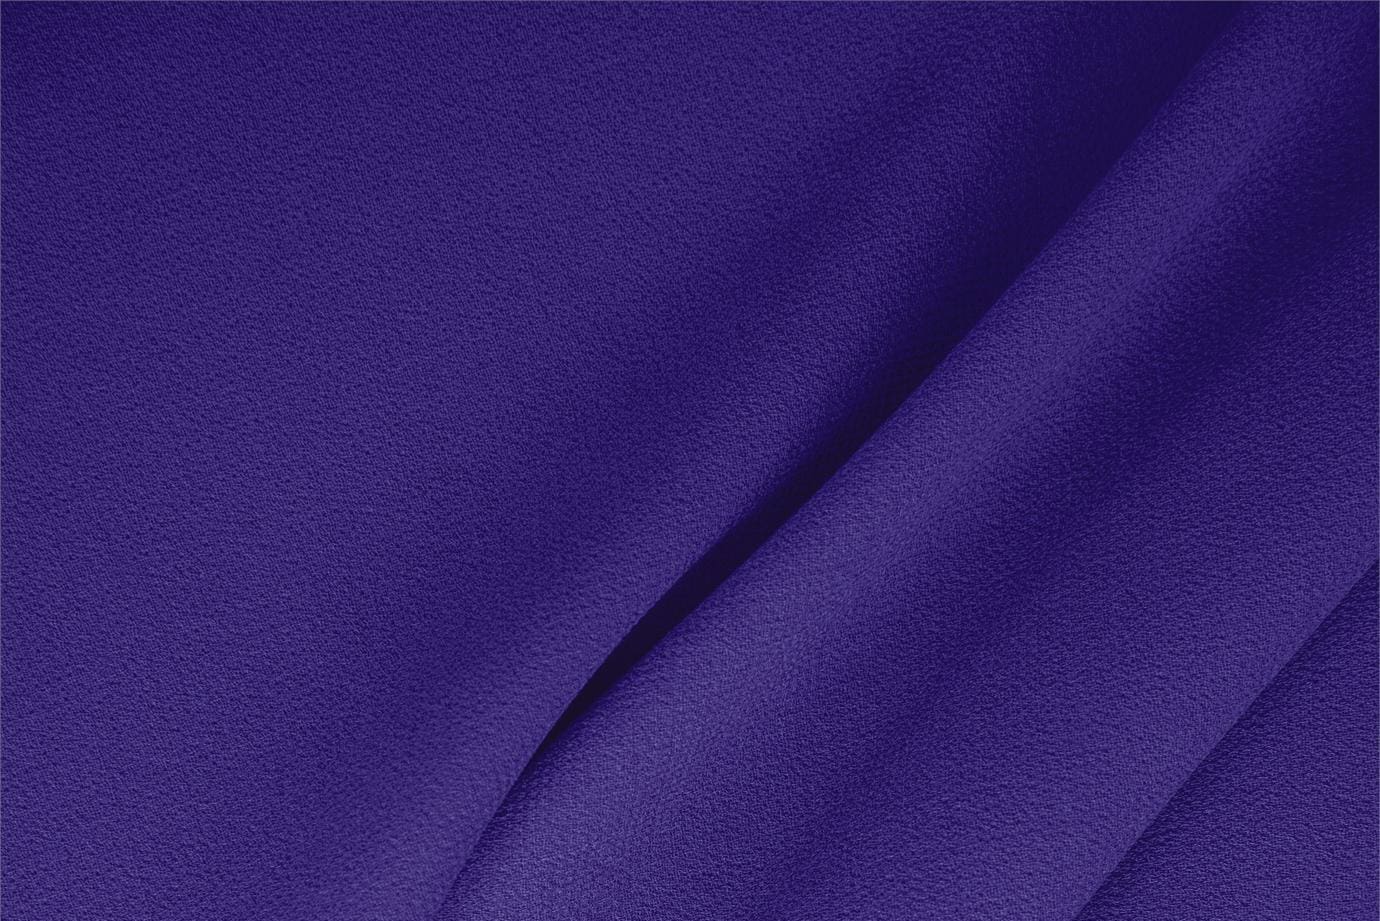 Tissu Double crêpe de laine Violet pétunia en Laine pour vêtements